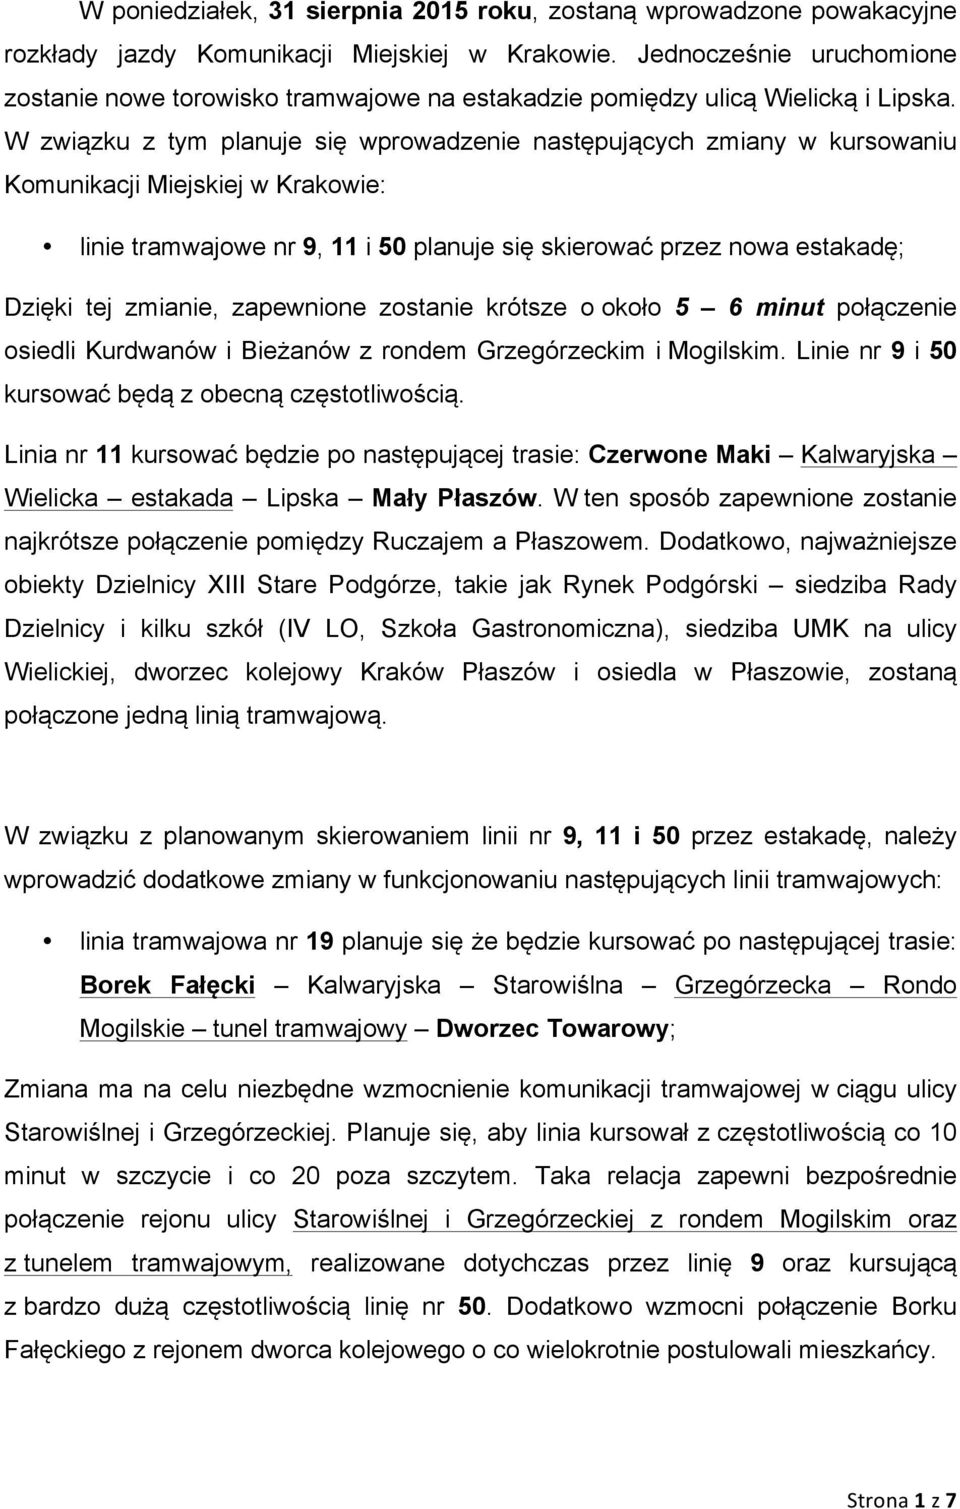 W związku z tym planuje się wprowadzenie następujących zmiany w kursowaniu Komunikacji Miejskiej w Krakowie: linie tramwajowe nr 9, 11 i 50 planuje się skierować przez nowa estakadę; Dzięki tej